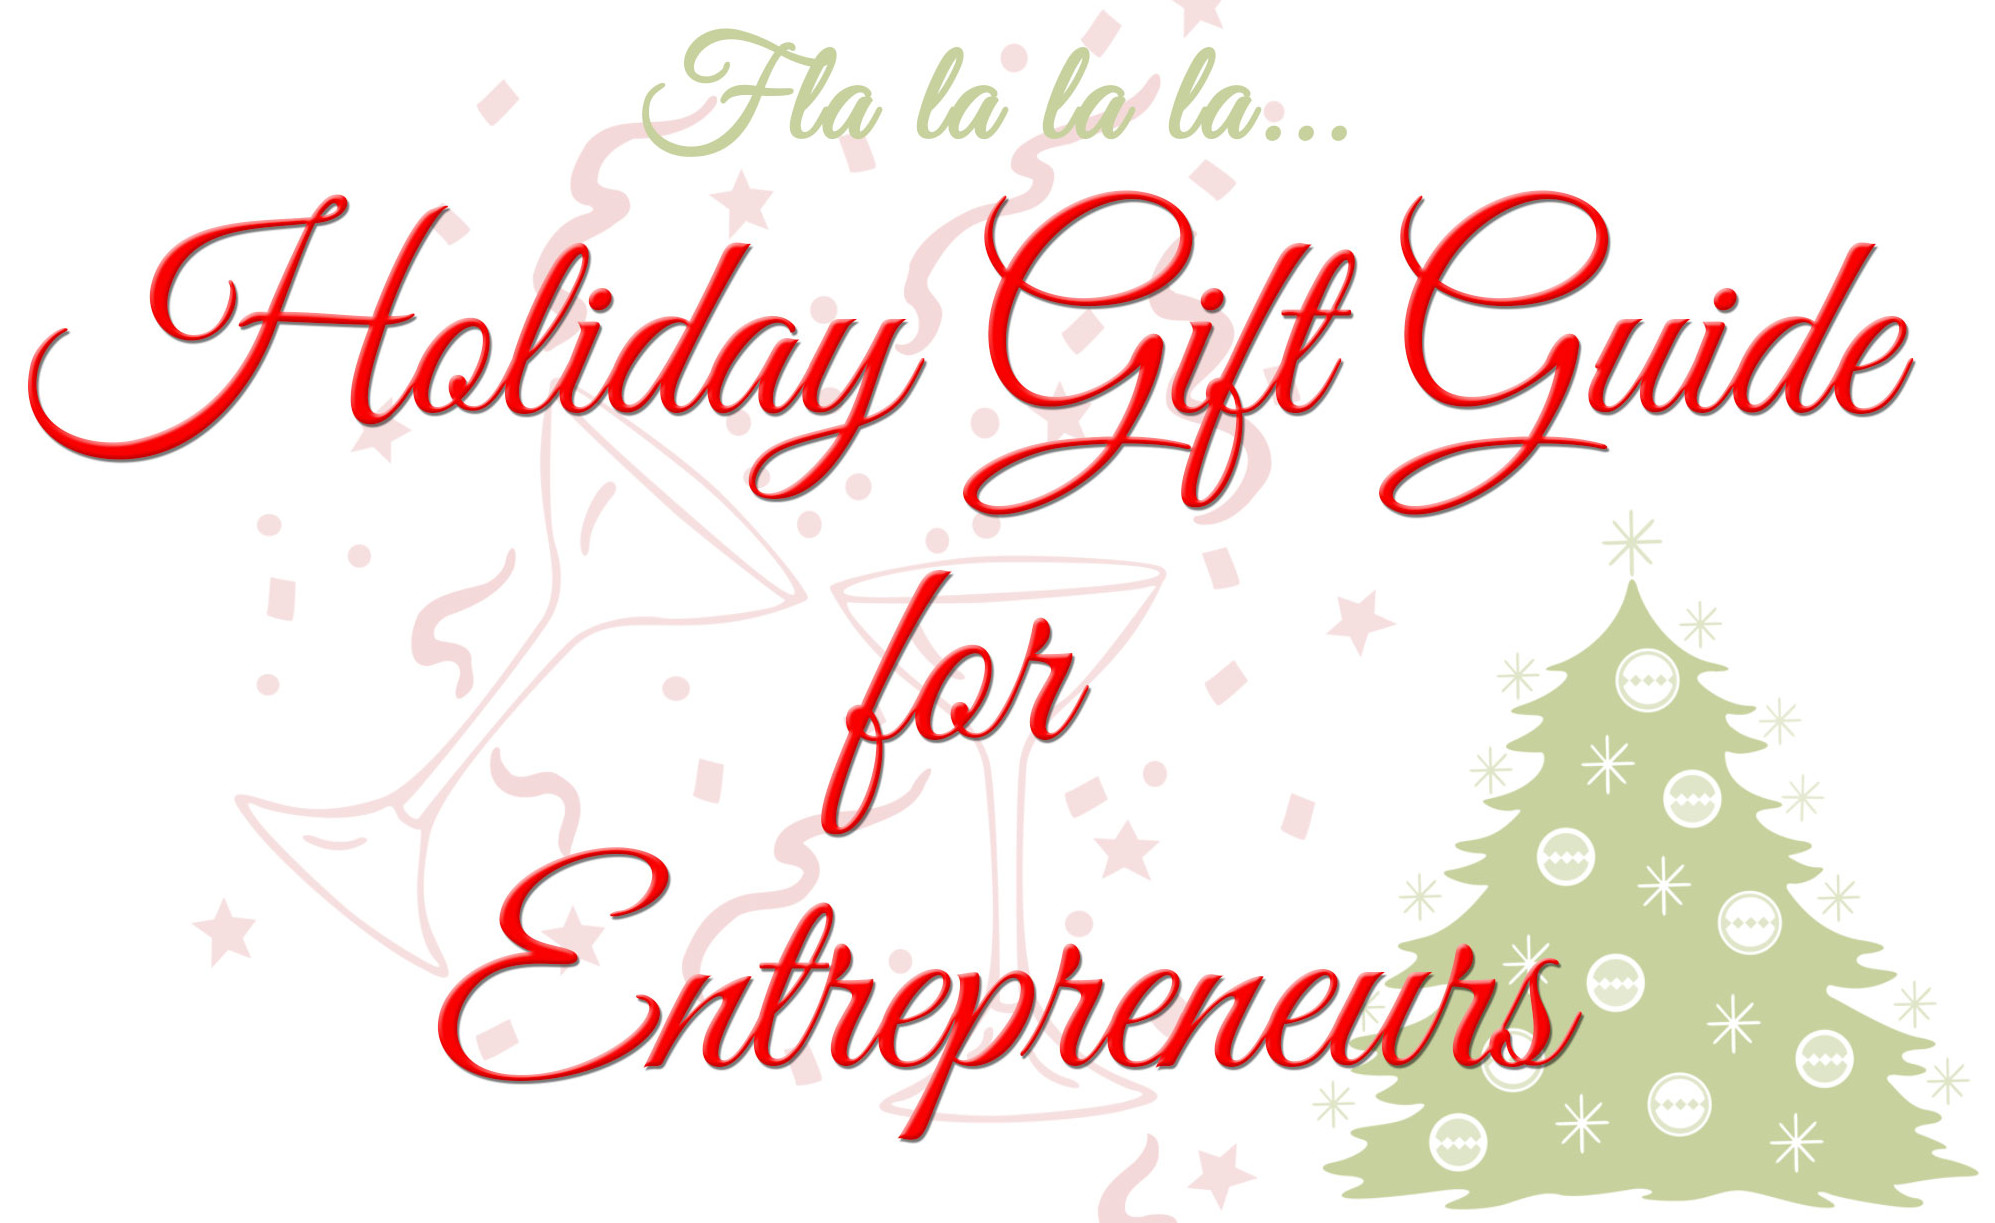 Holiday Gift Guide for Entrepreneurs